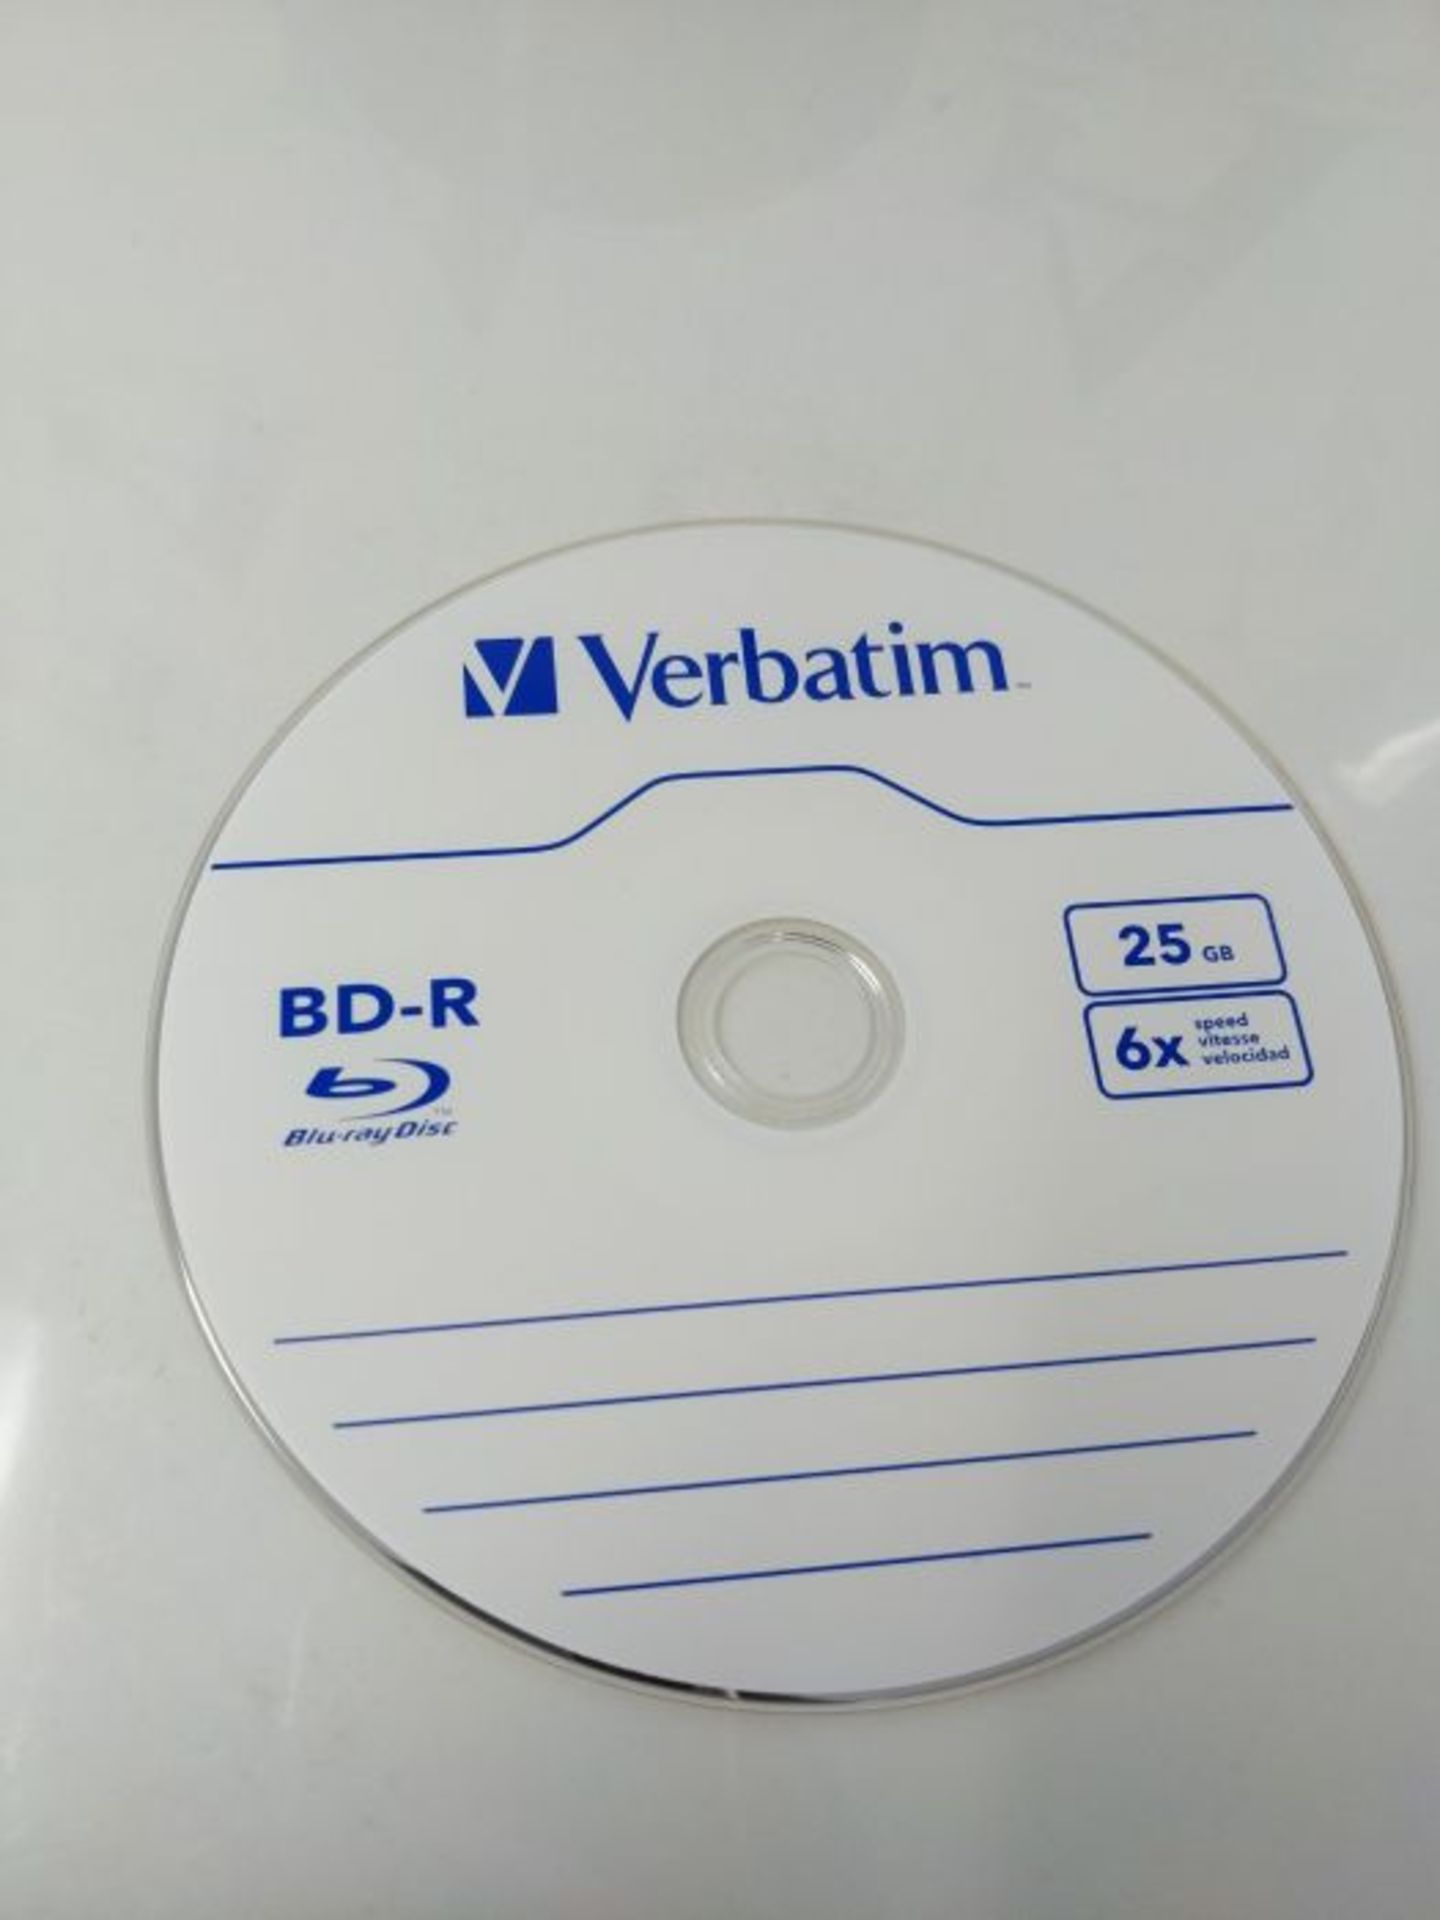 Verbatim BD-R SL Datalife 25 GB - Blu-Ray-Disk - 6-fache Brenngeschwindigkeit - Hardco - Image 3 of 3